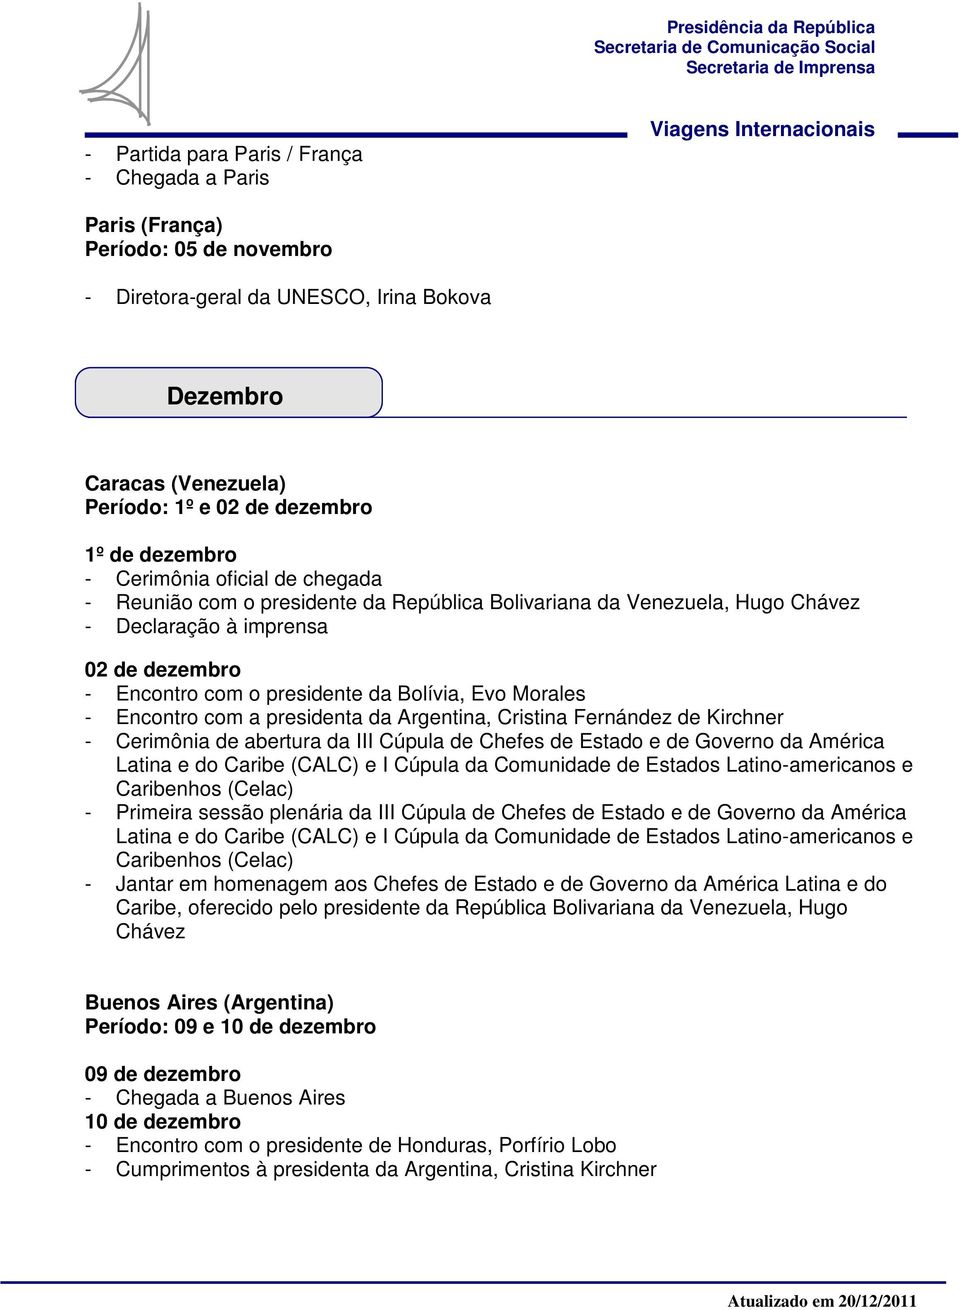 Cristina Fernández de Kirchner - Cerimônia de abertura da III Cúpula de Chefes de Estado e de Governo da América Latina e do Caribe (CALC) e I Cúpula da Comunidade de Estados Latino-americanos e